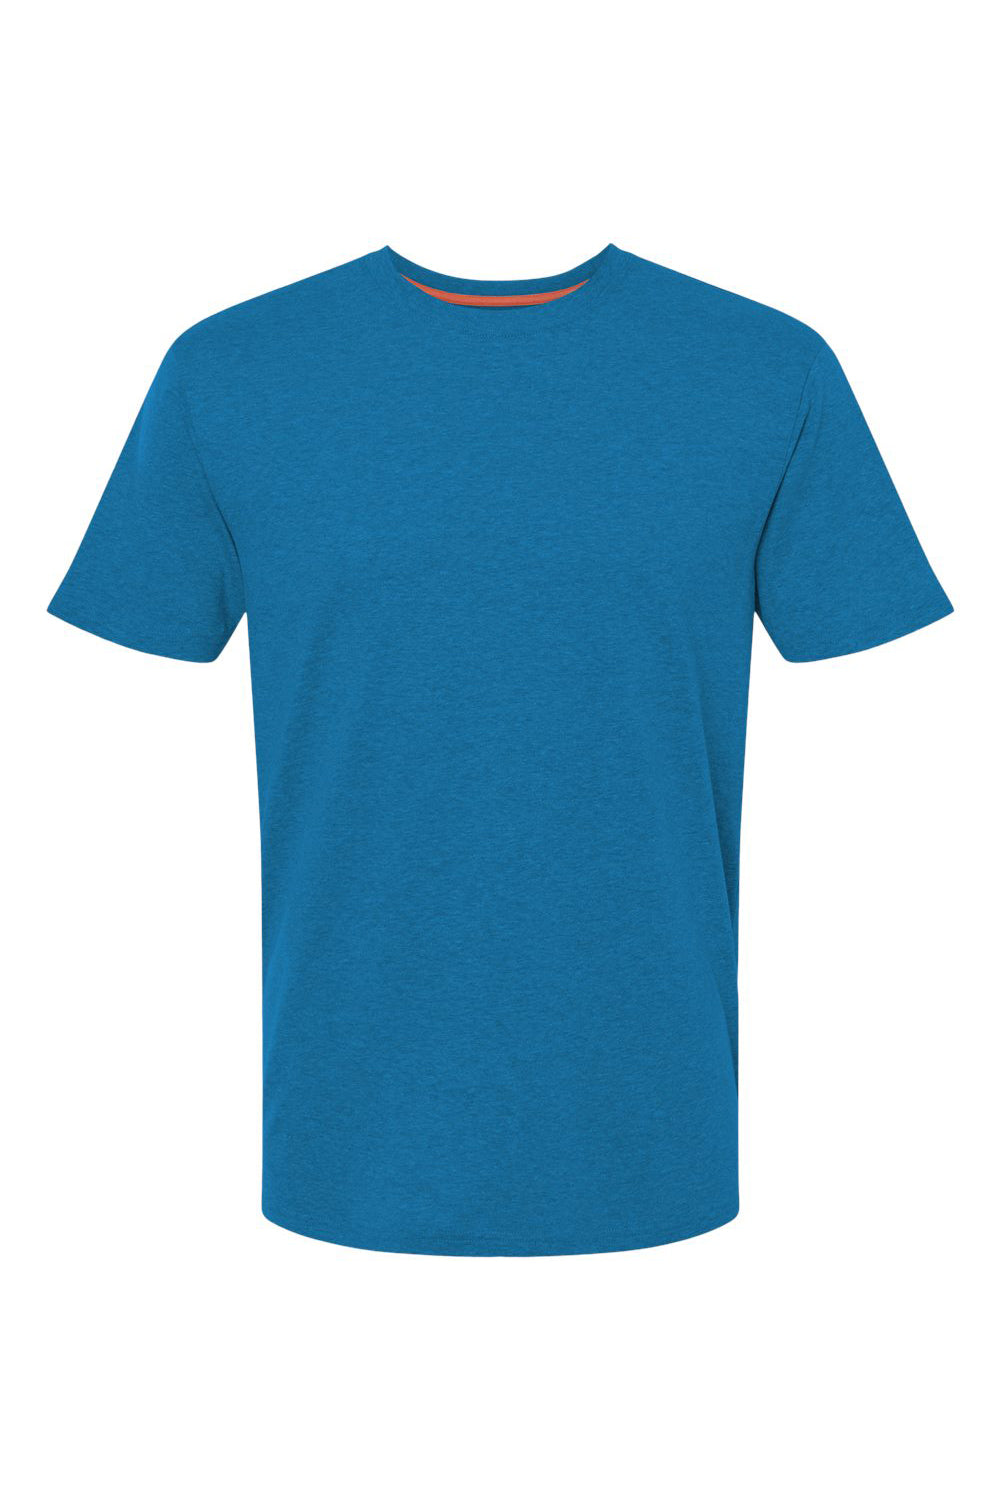 Kastlfel 2010 Mens RecycledSoft Short Sleve Crewneck T-Shirt Breaker Blue Flat Front